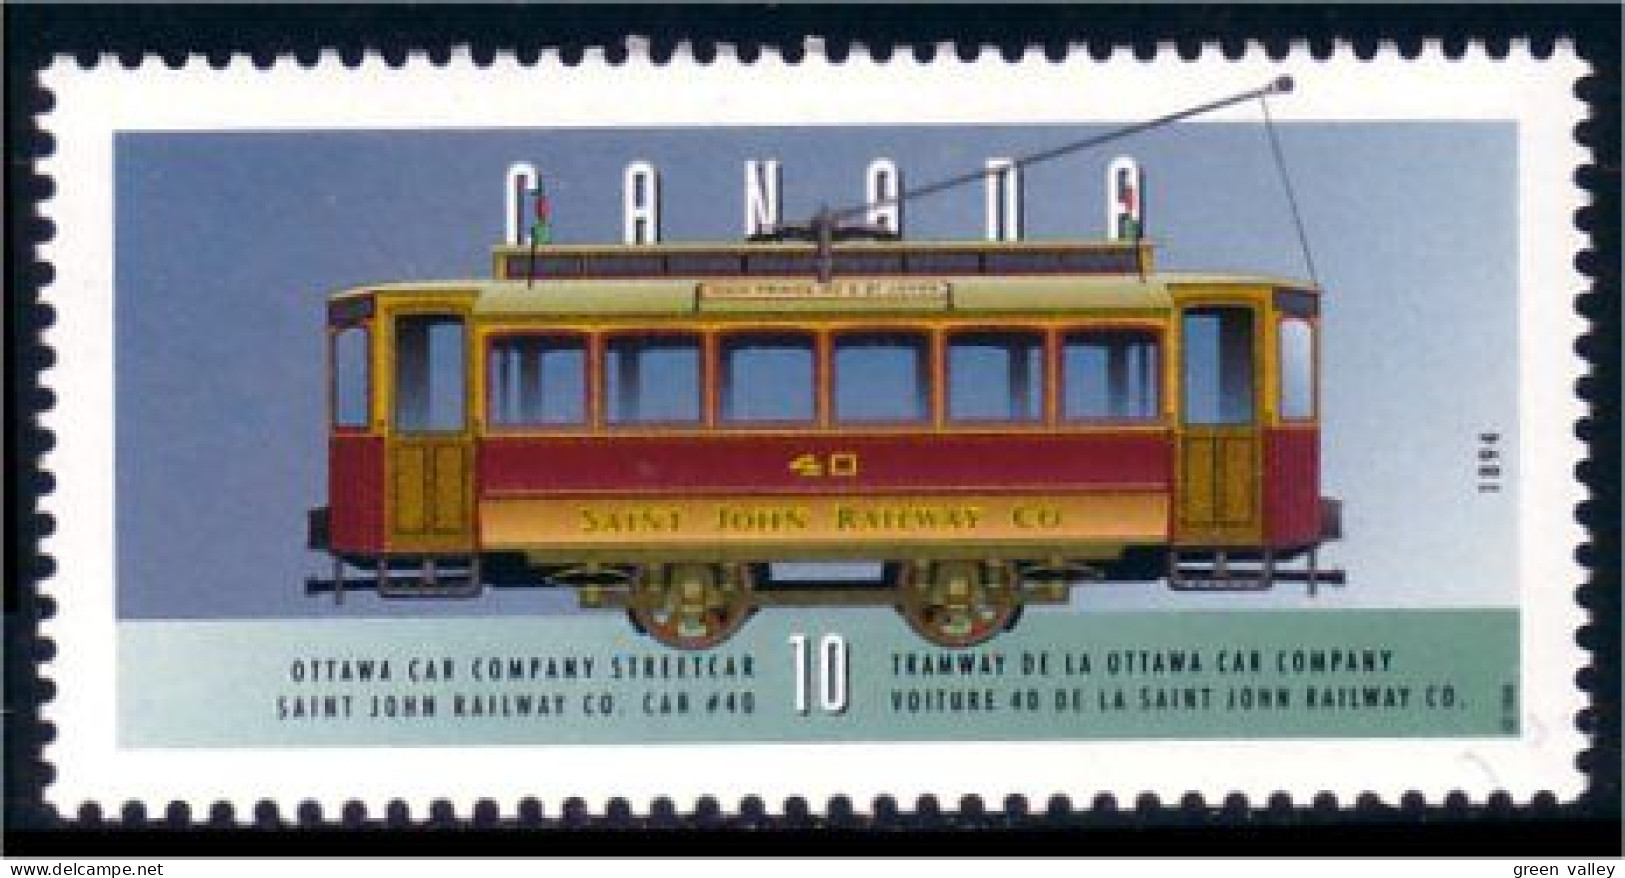 Canada Tramway Ottawa MNH ** Neuf SC (C16-05kd) - Bus